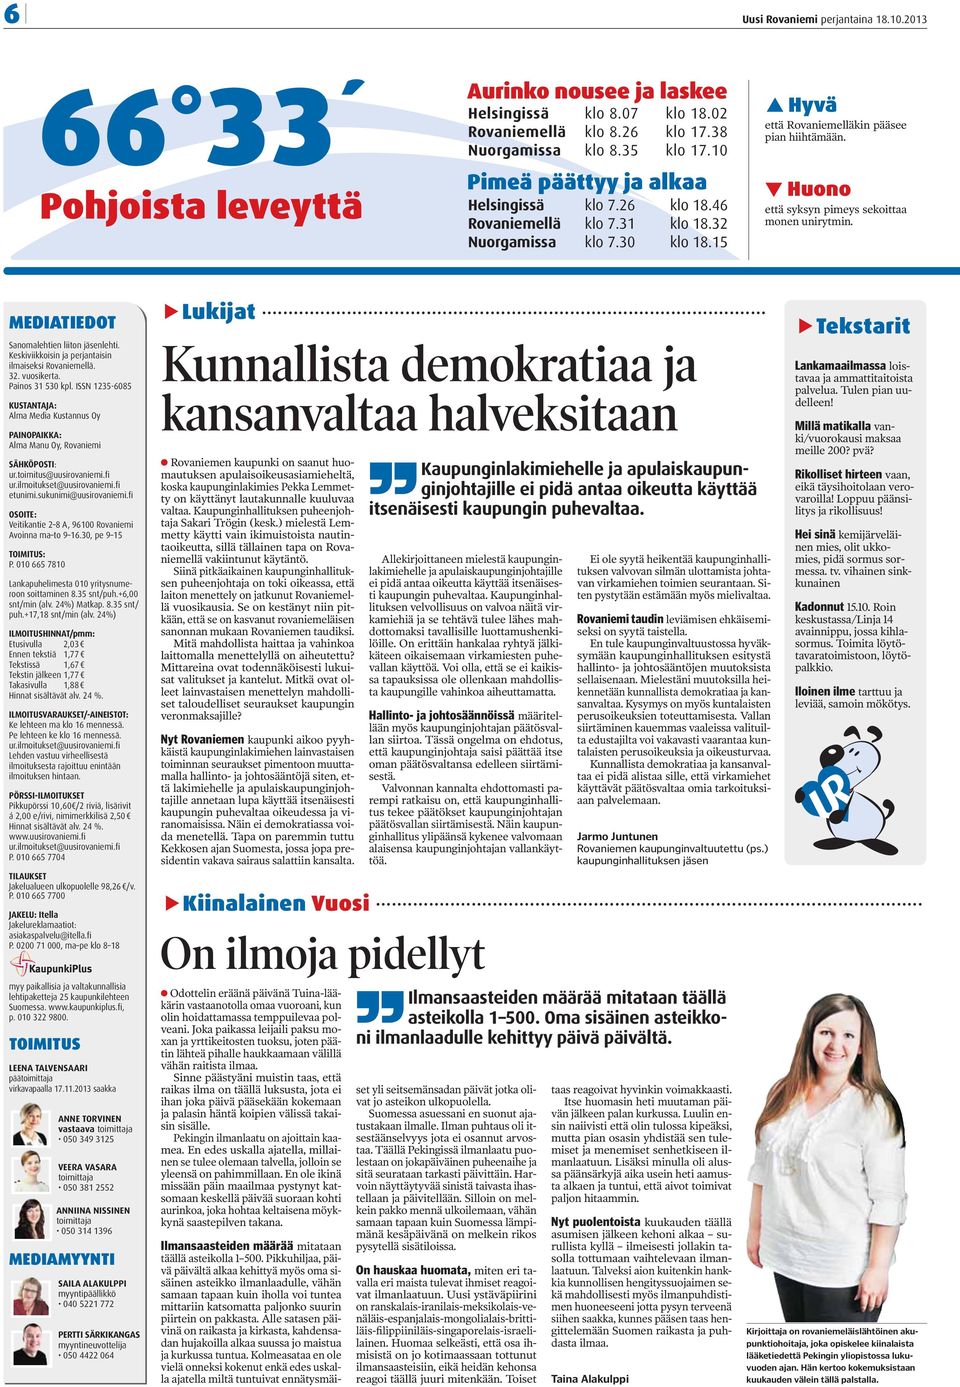 Huono että syksyn pimeys sekoittaa monen unirytmin. MEDIATIEDOT Sanomalehtien liiton jäsenlehti. Keskiviikkoisin ja perjantaisin ilmaiseksi Rovaniemellä. 32. vuosikerta. Painos 31 530 kpl.